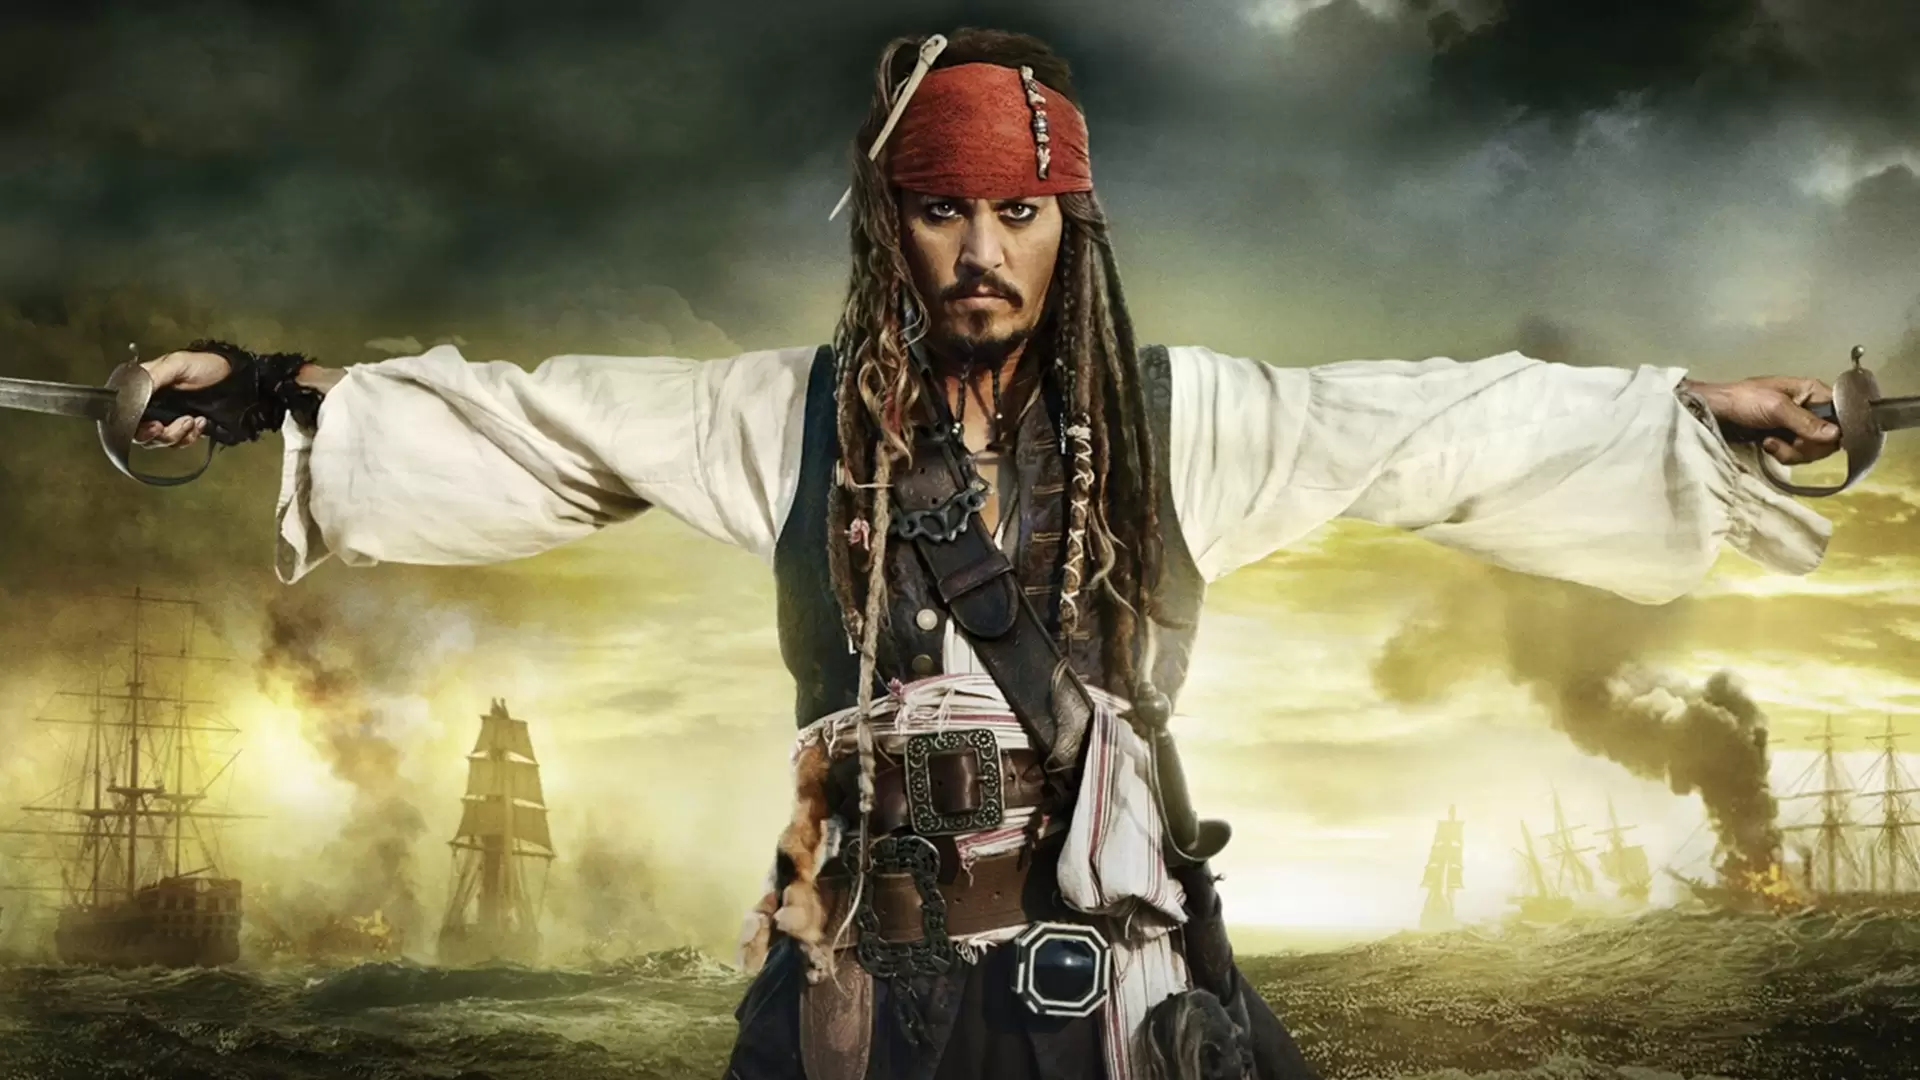 دانلود فیلم Pirates of the Caribbean: On Stranger Tides 2011 (دزدان دریایی کارائیب: سوار بر امواج ناشناخته) با زیرنویس فارسی و تماشای آنلاین